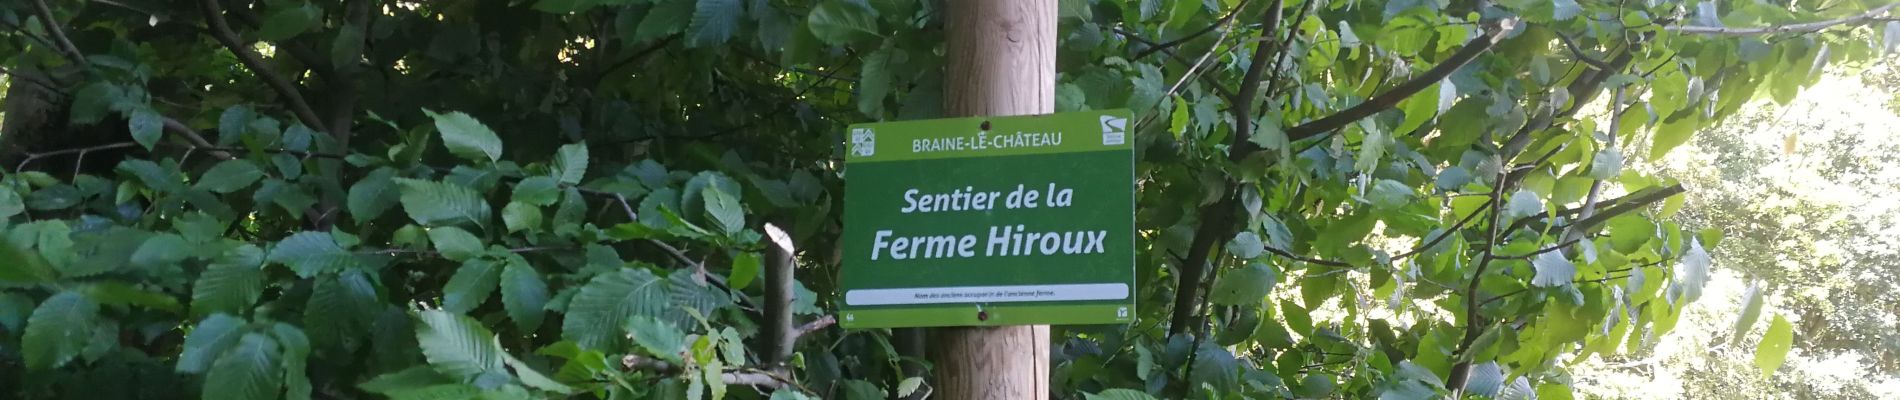 Punto de interés Ittre - Sentier de la ferme Hiroux (affichage Braine-Le-Château) - Photo